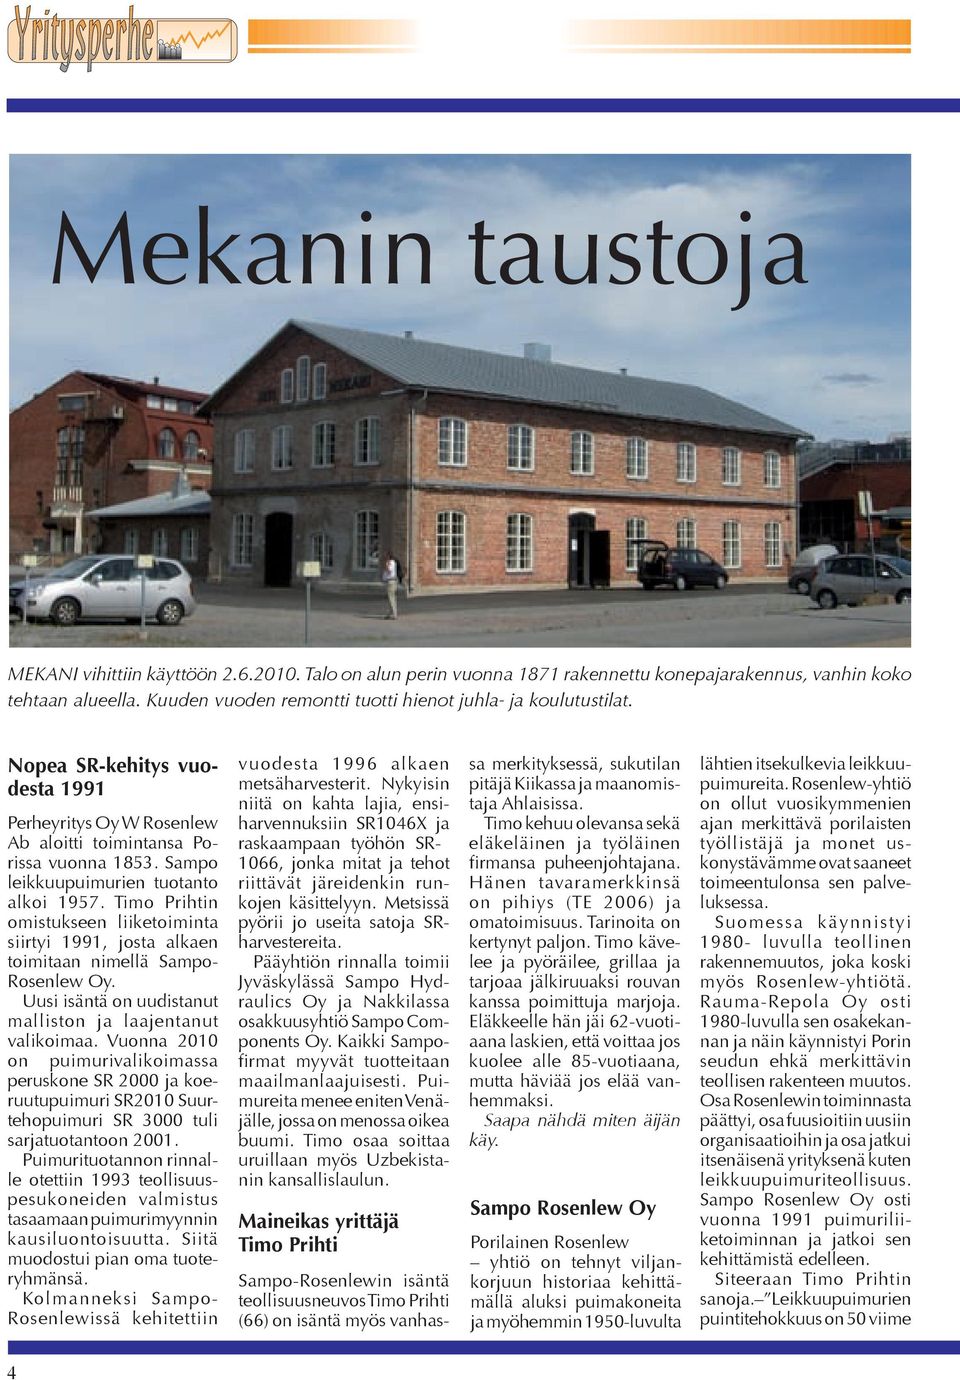 Sampo leikkuupuimurien tuotanto alkoi 1957. Timo Prihtin omistukseen liiketoiminta siirtyi 1991, josta alkaen toimitaan nimellä Sampo- Rosenlew Oy.